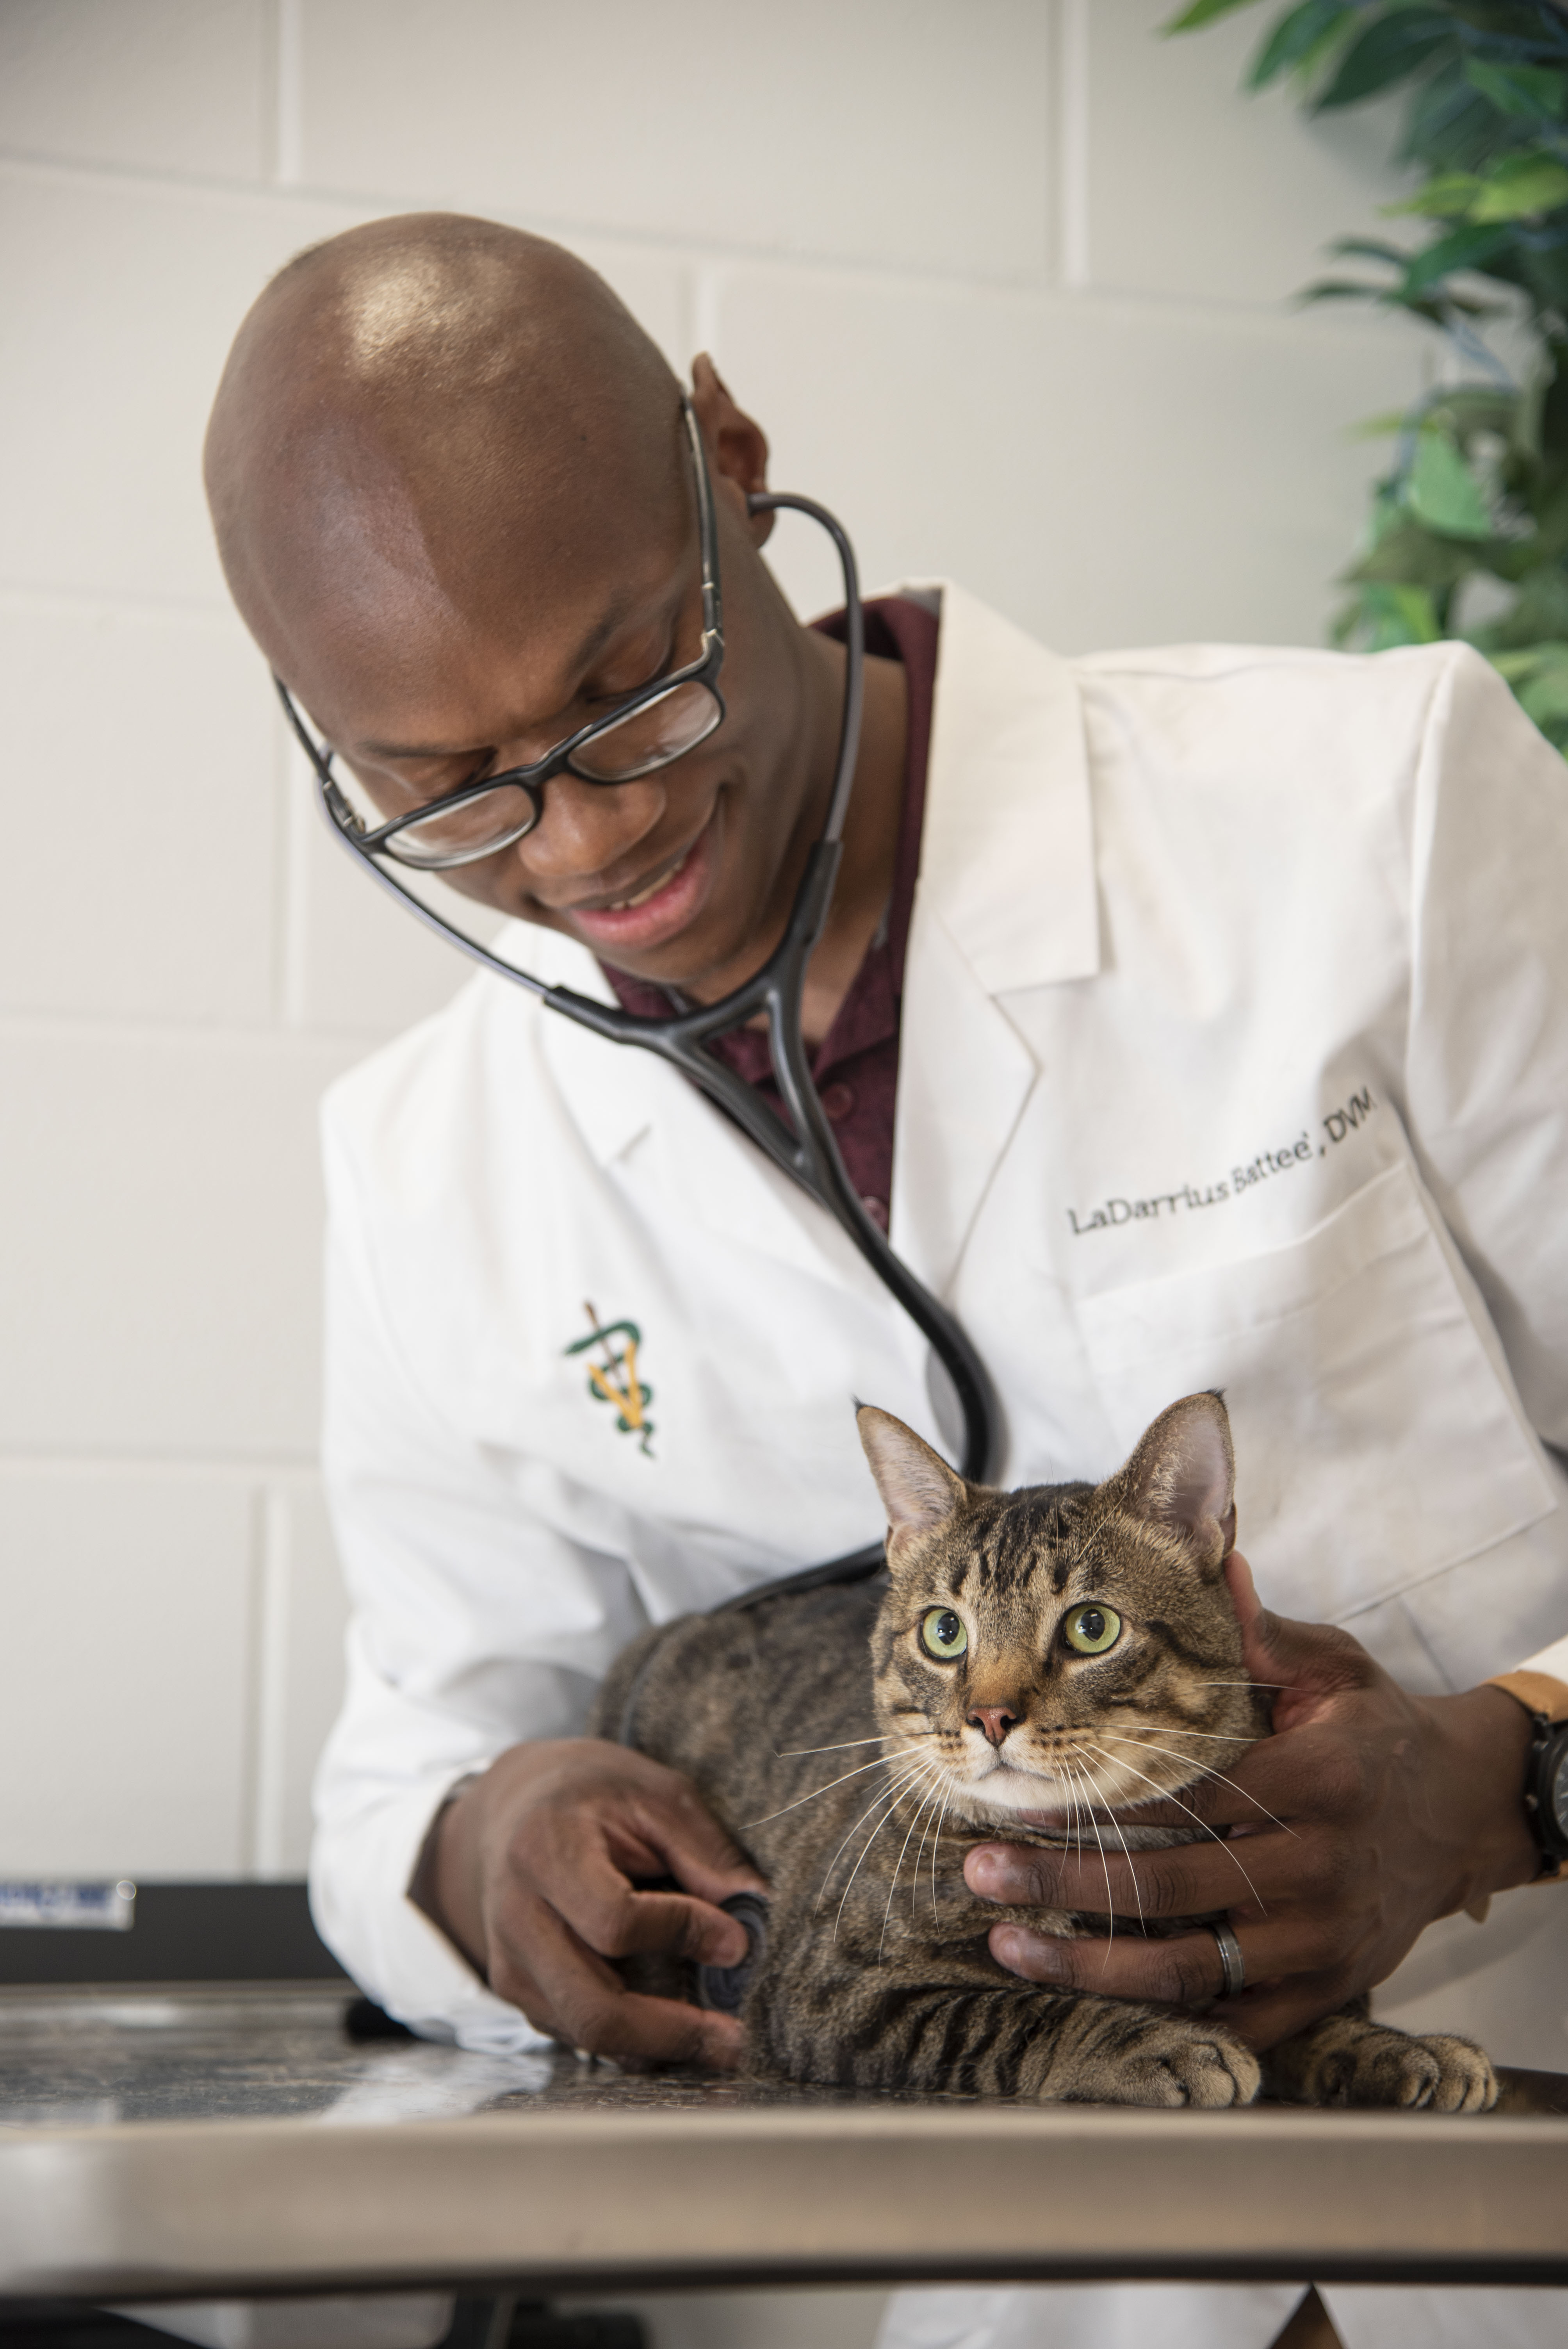 A veterinarian examines a cat